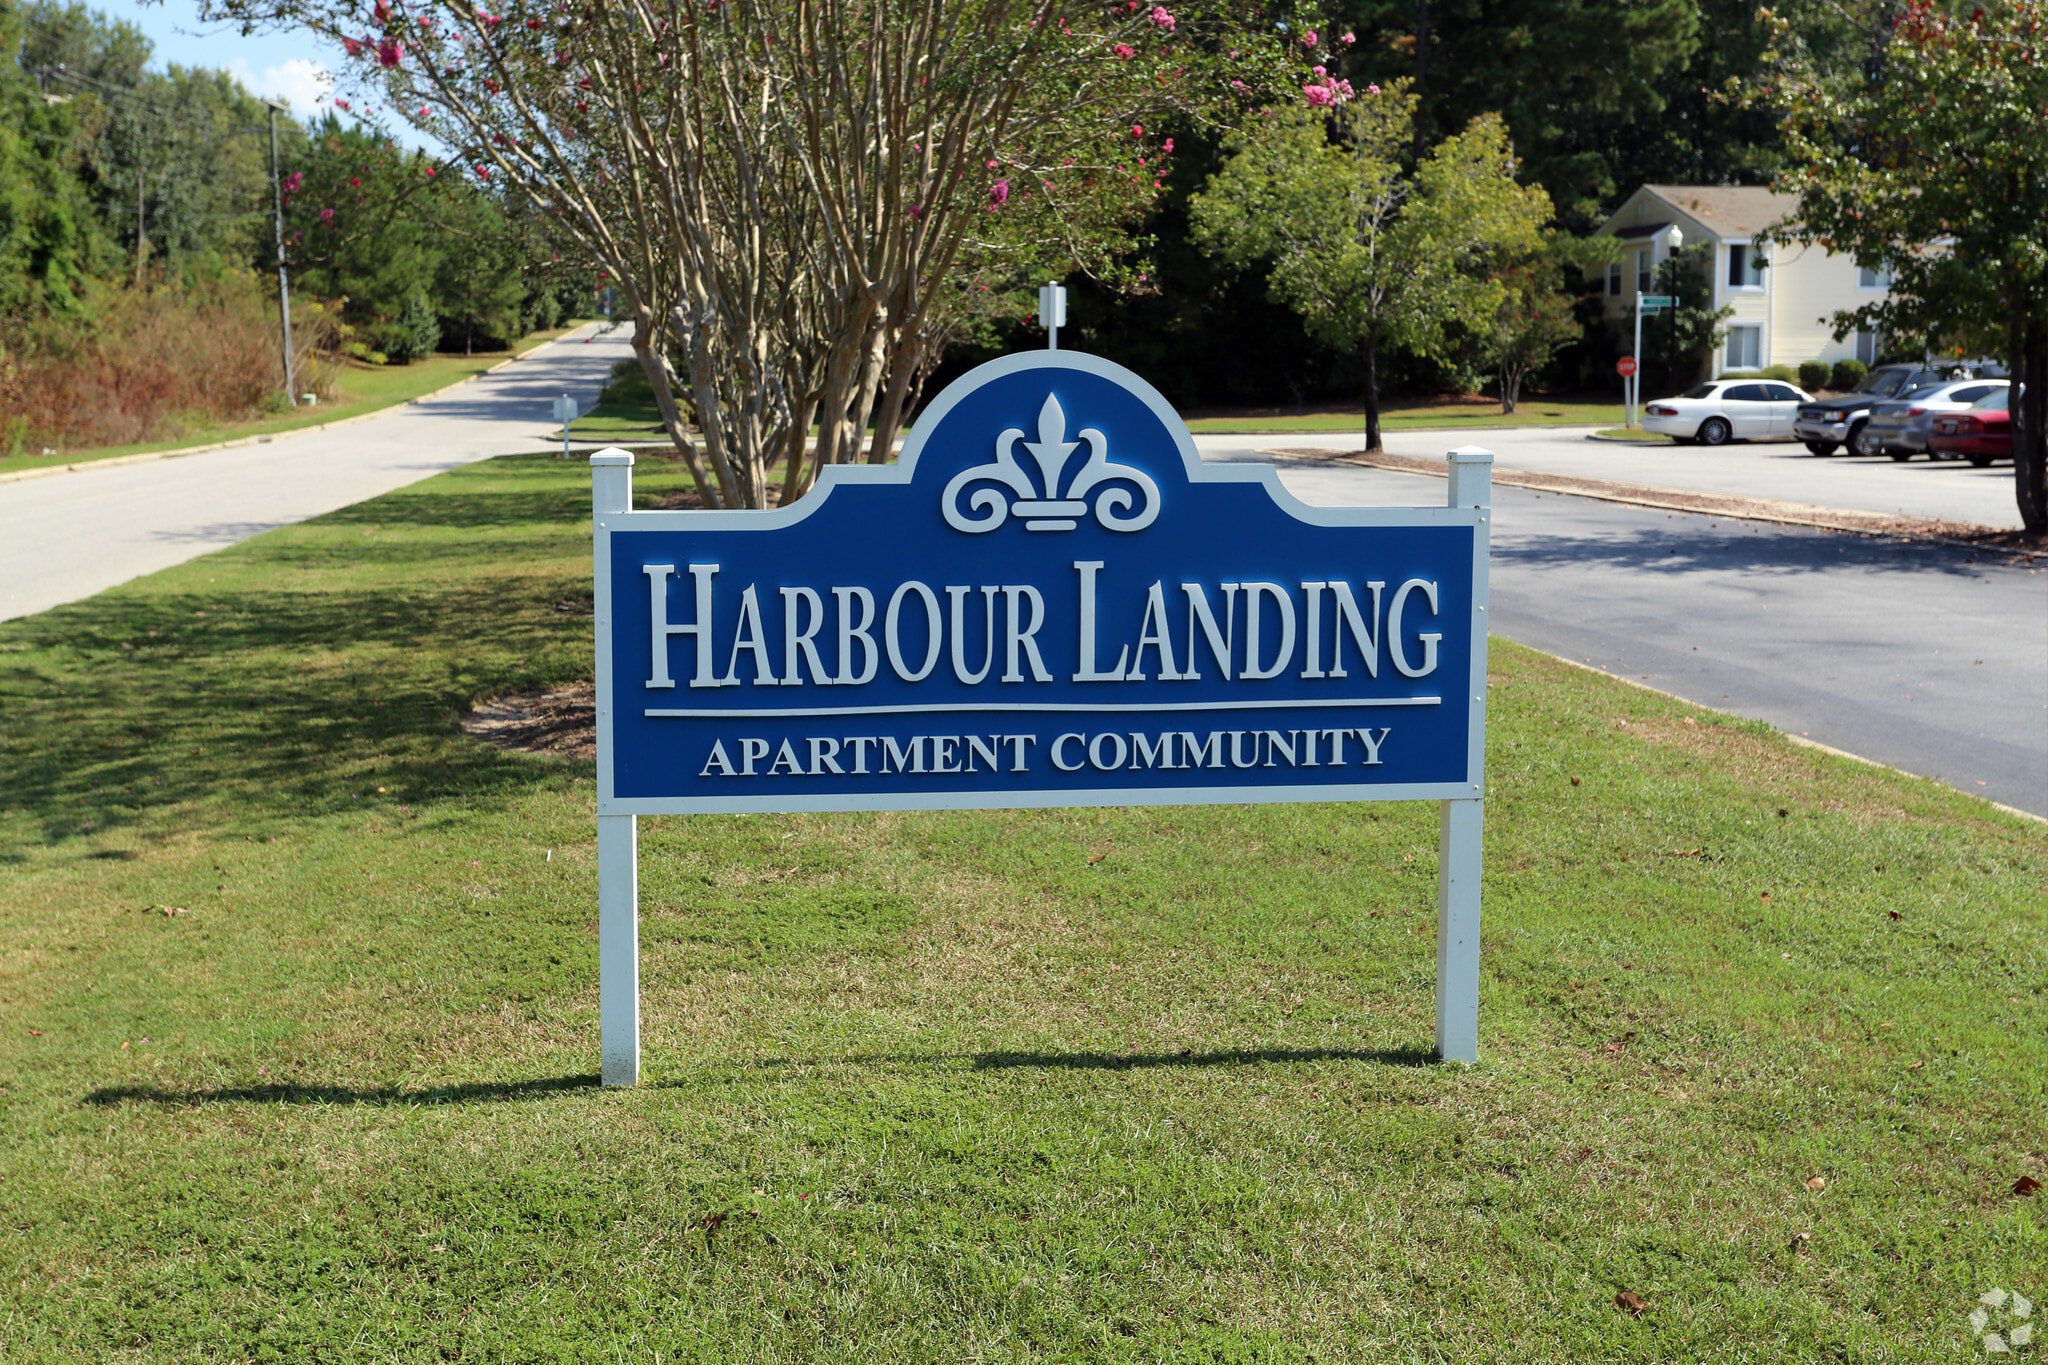 Harbour Landing sigange